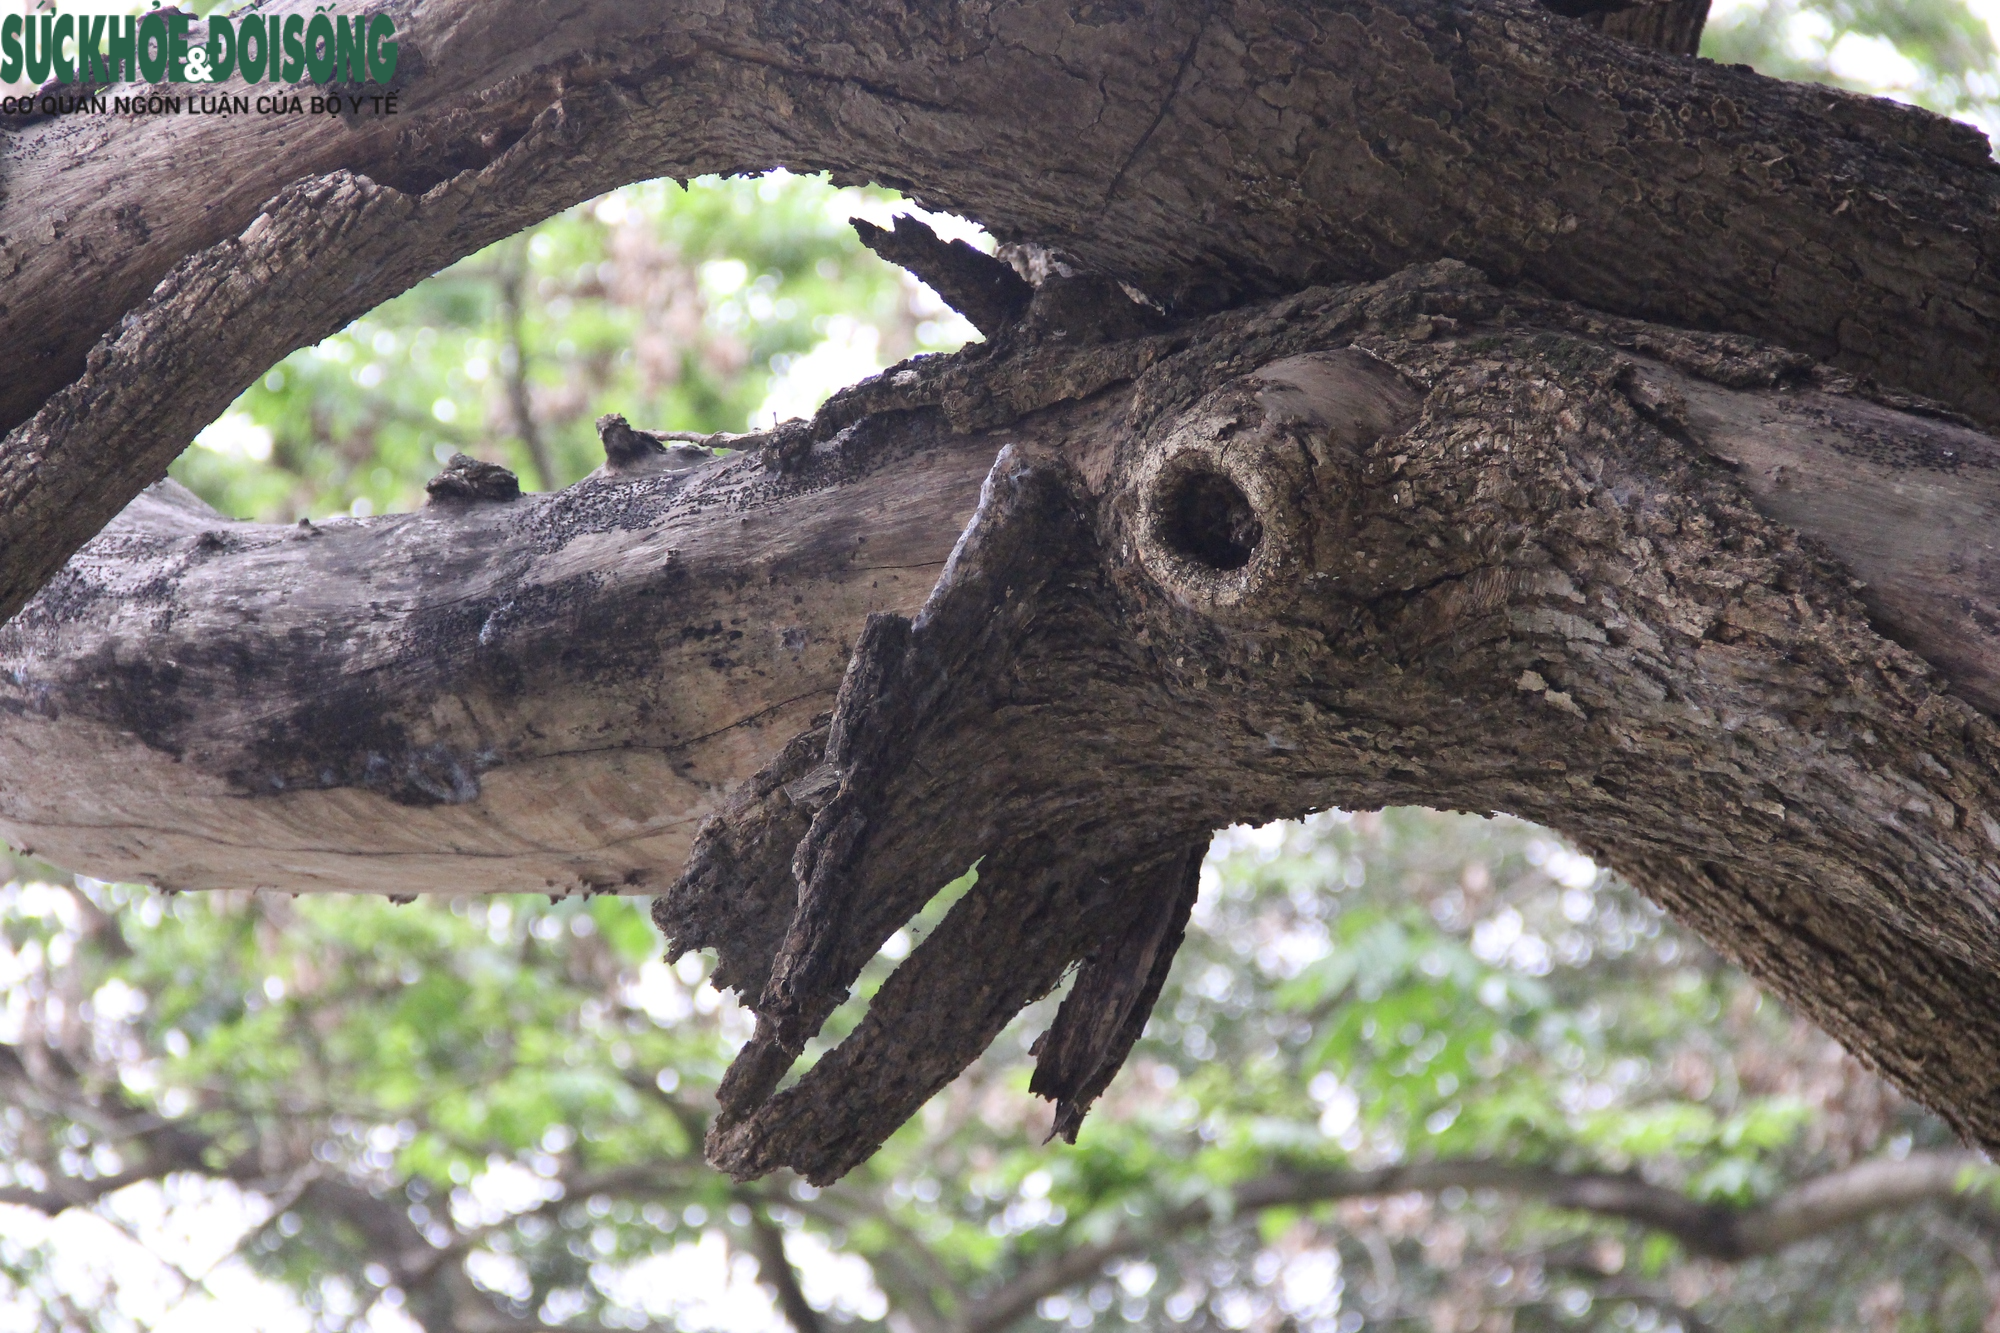 Cây gỗ quý ở Hồ Gươm có dấu hiệu khô héo, nghi đã chết từ lâu - Ảnh 7.